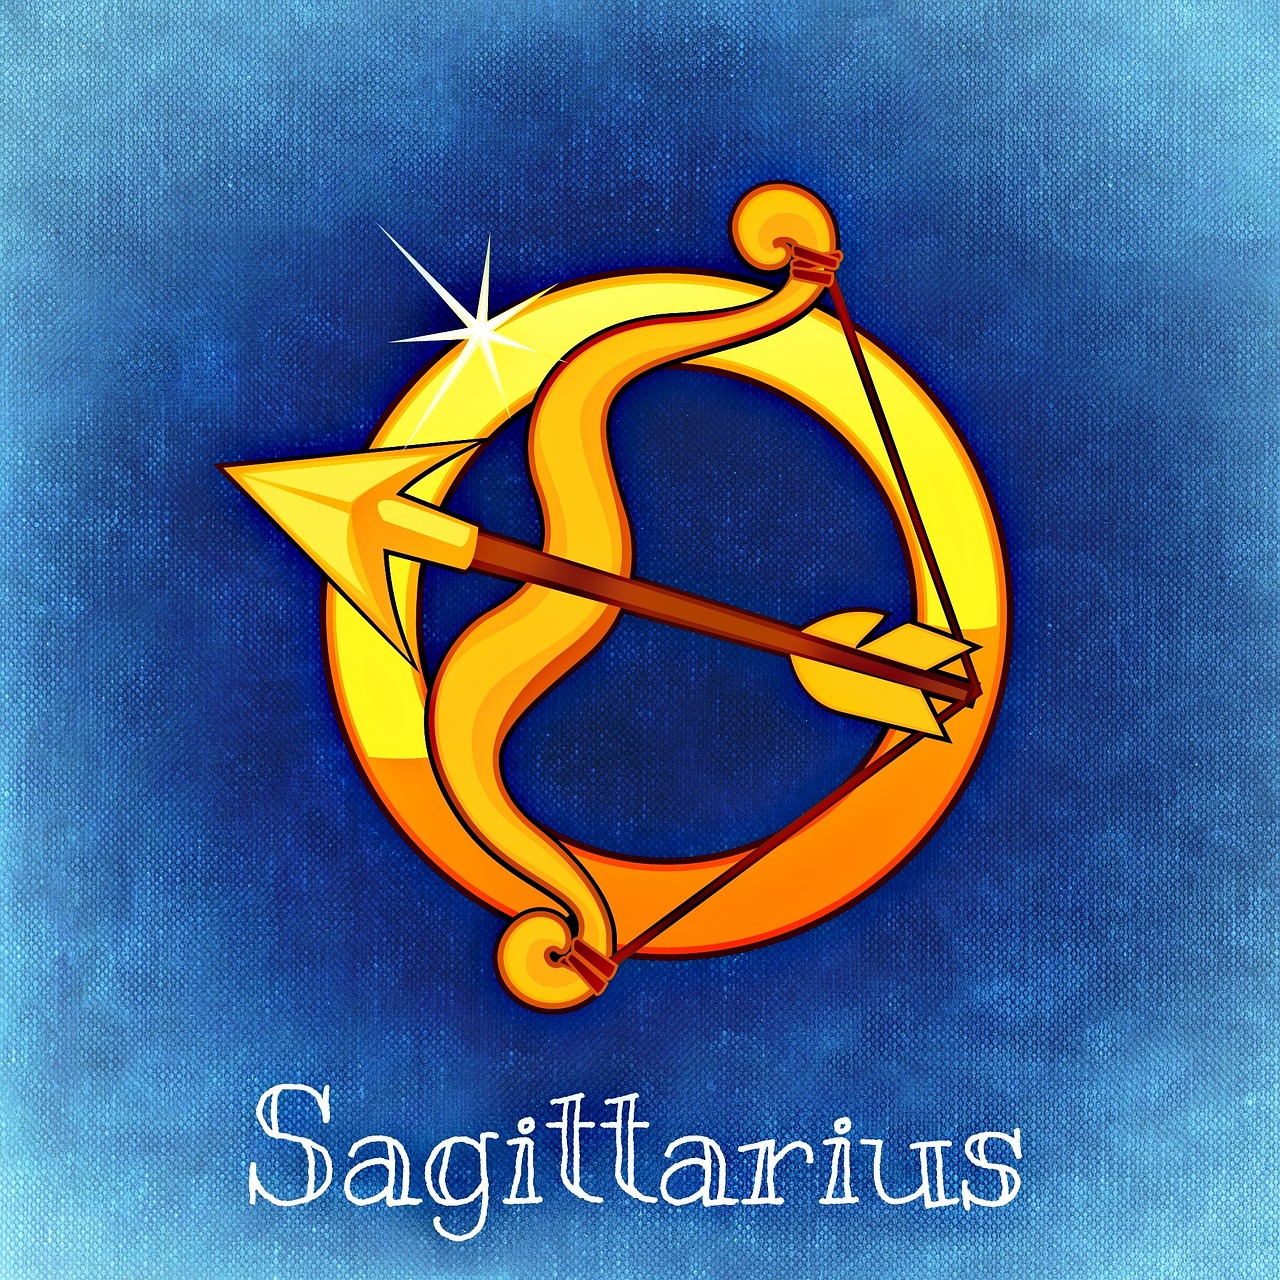 Oroscopo, segno zodiacale del Sagittario: caratteristiche e date